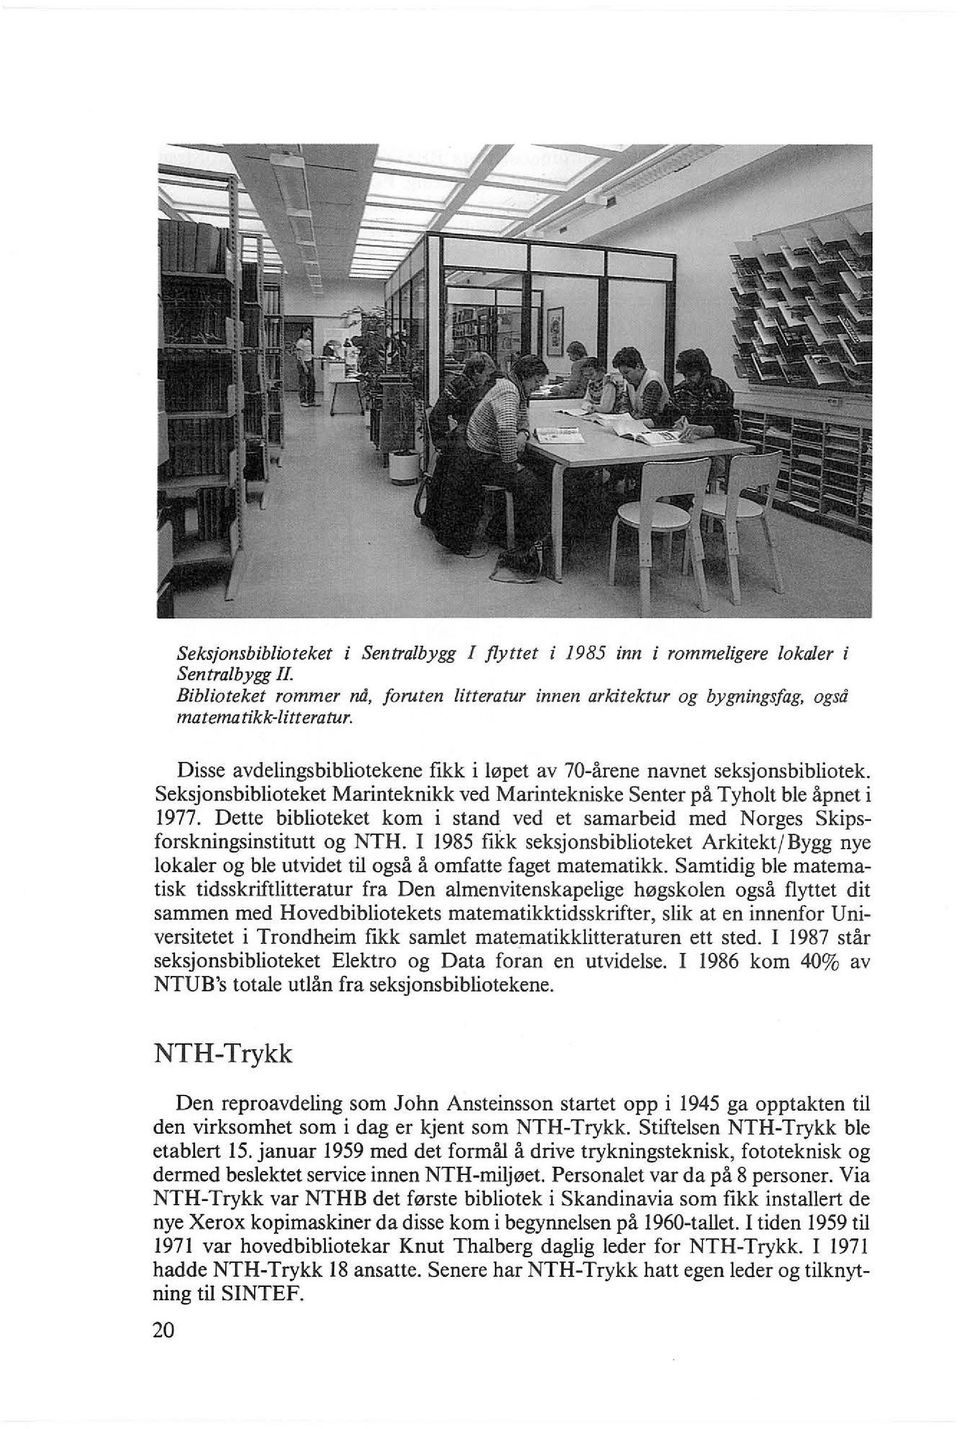 Dette biblioteket kom i stand ved et samarbeid med Norges Skipsforskningsinstitutt og NTH.